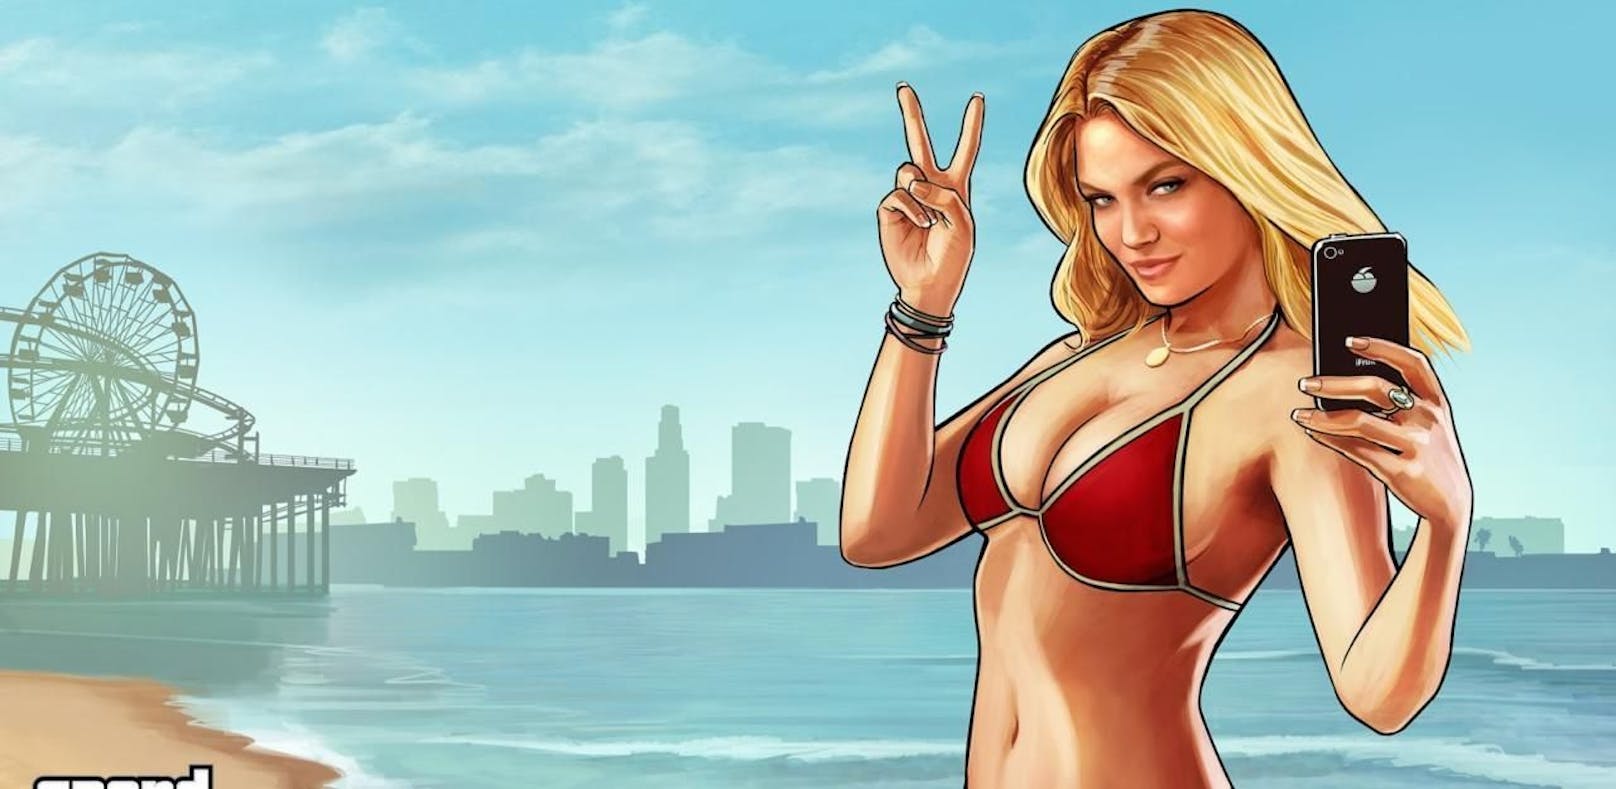 Weibliche Hauptrolle für "Grand Theft Auto 6"?